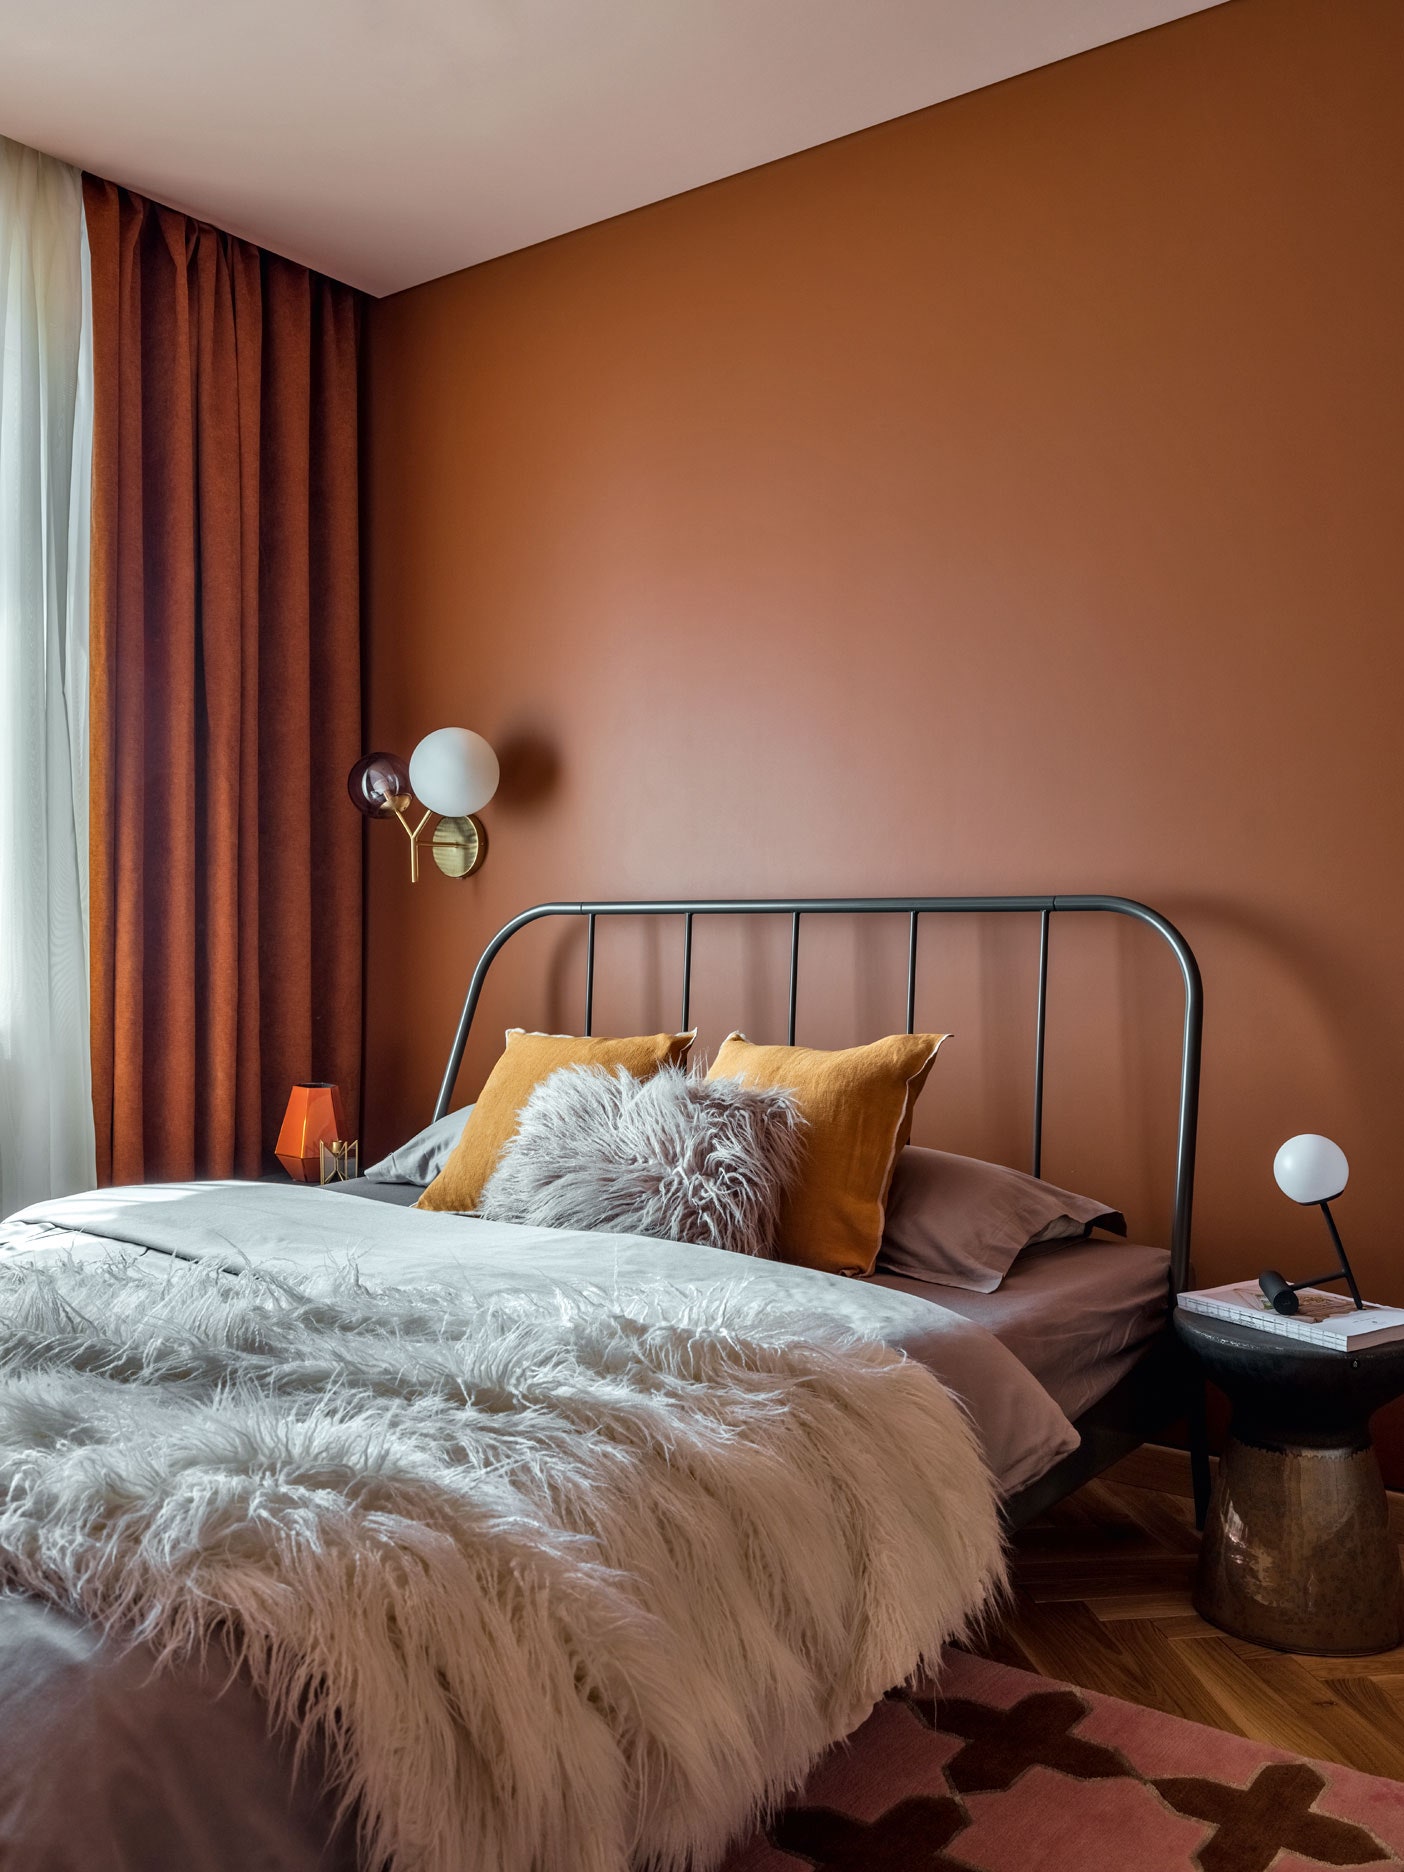 Спальня. Кровать IKEA меховая подушка и плед Barcelona Design текстиль и настольная лампа из магазина Designboom ковер...